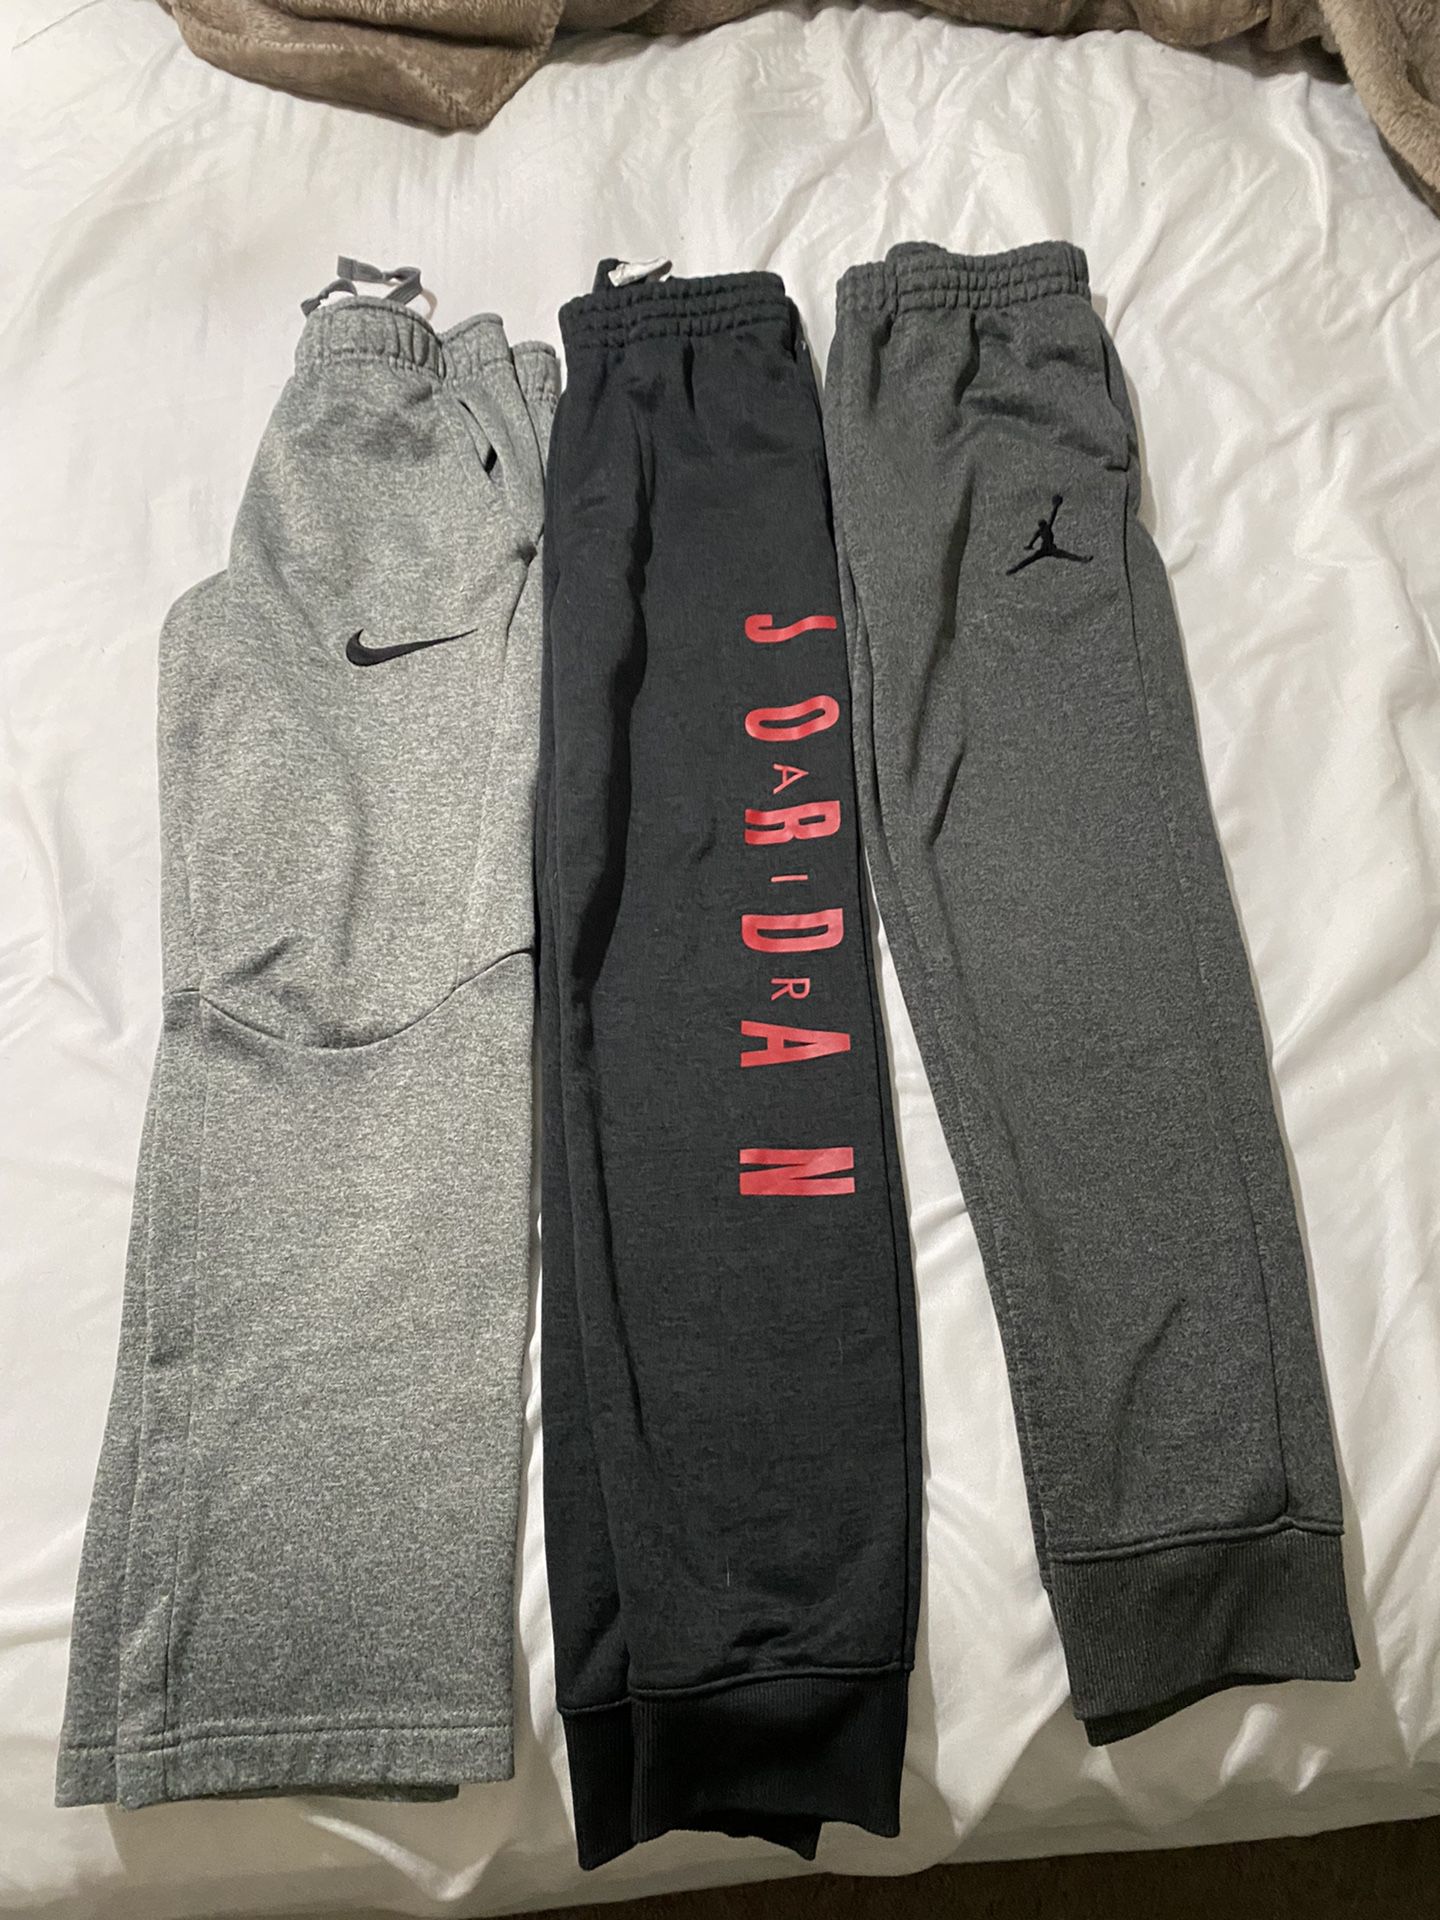 Boys Youth Nike/Jordan Sweats 